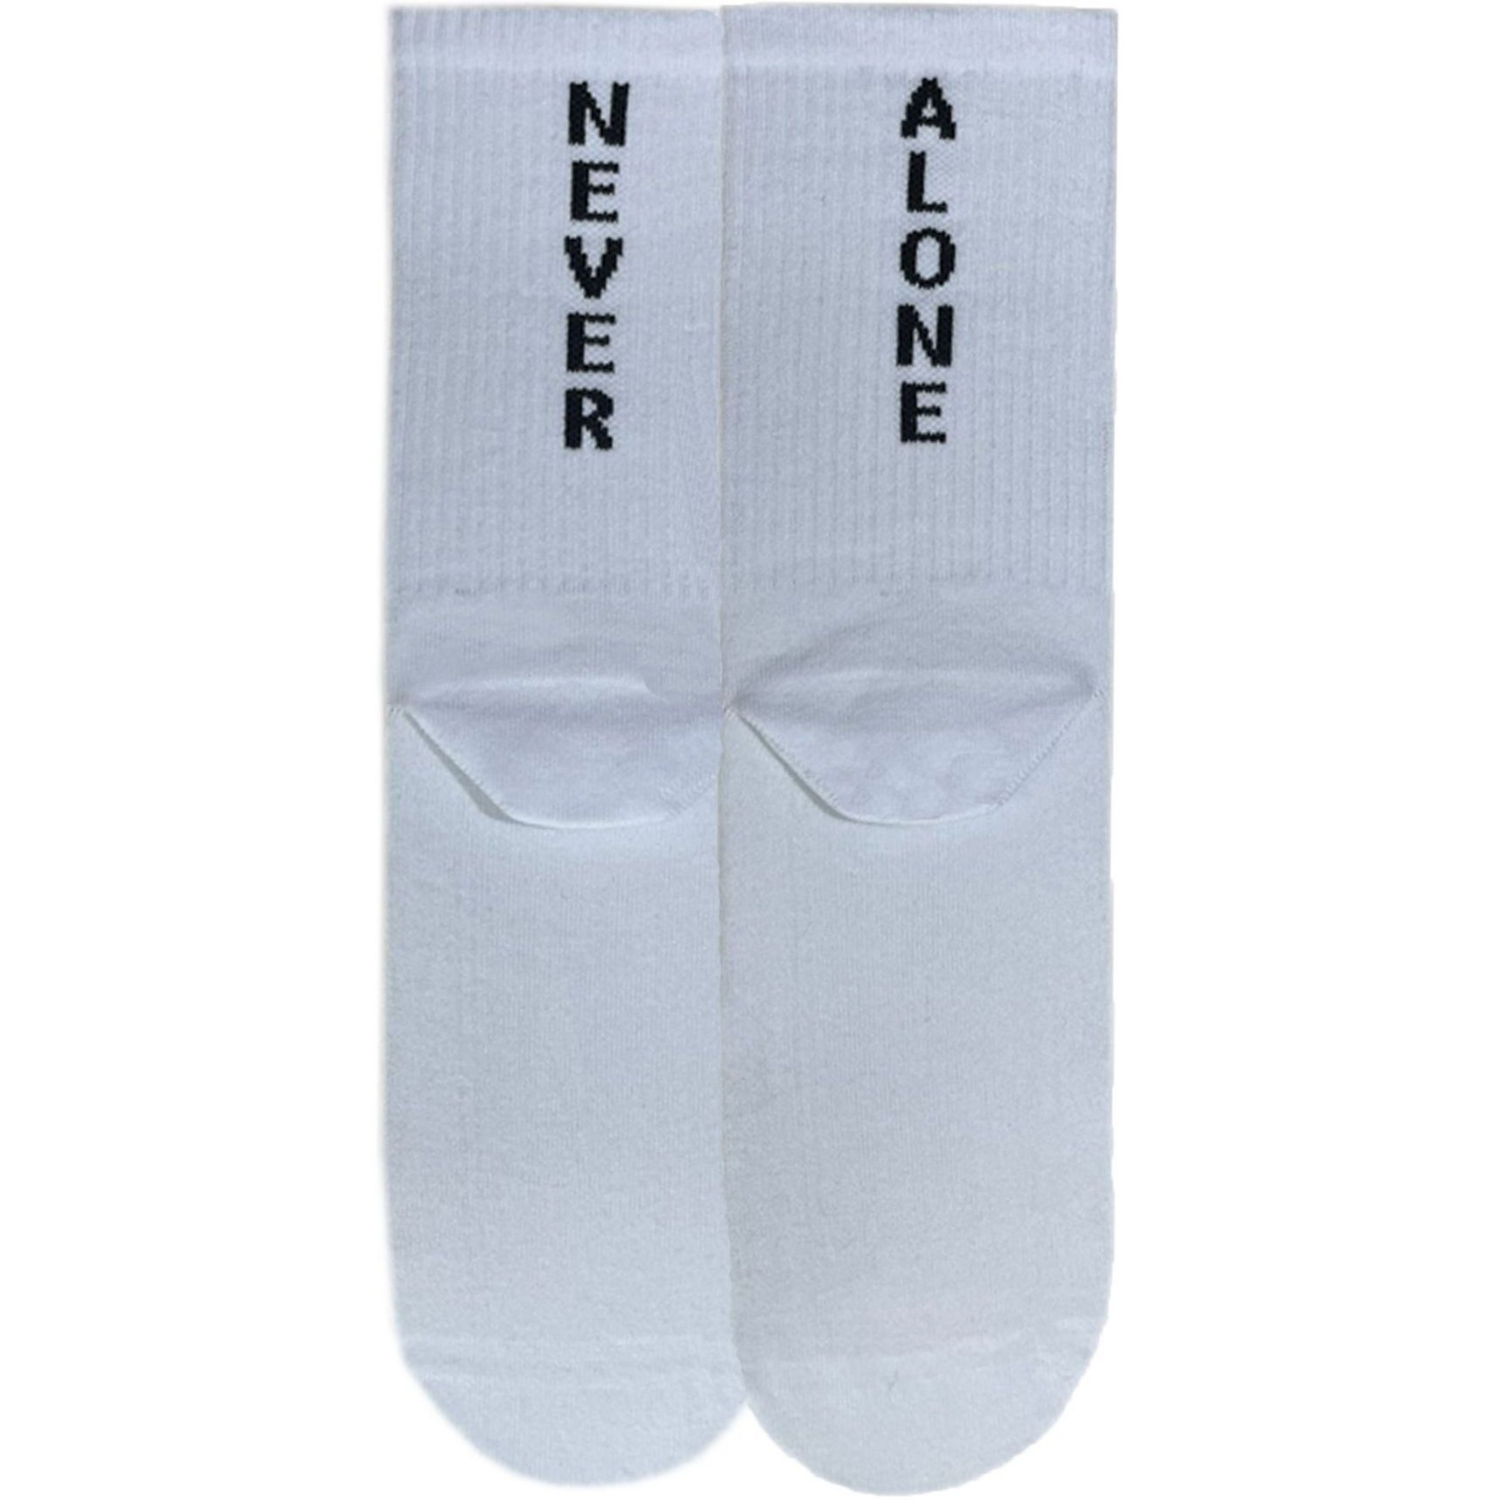 Шкарпетки чоловічі Premier Socks 44-45 1 пара білі з принтом (4820163317939)фото